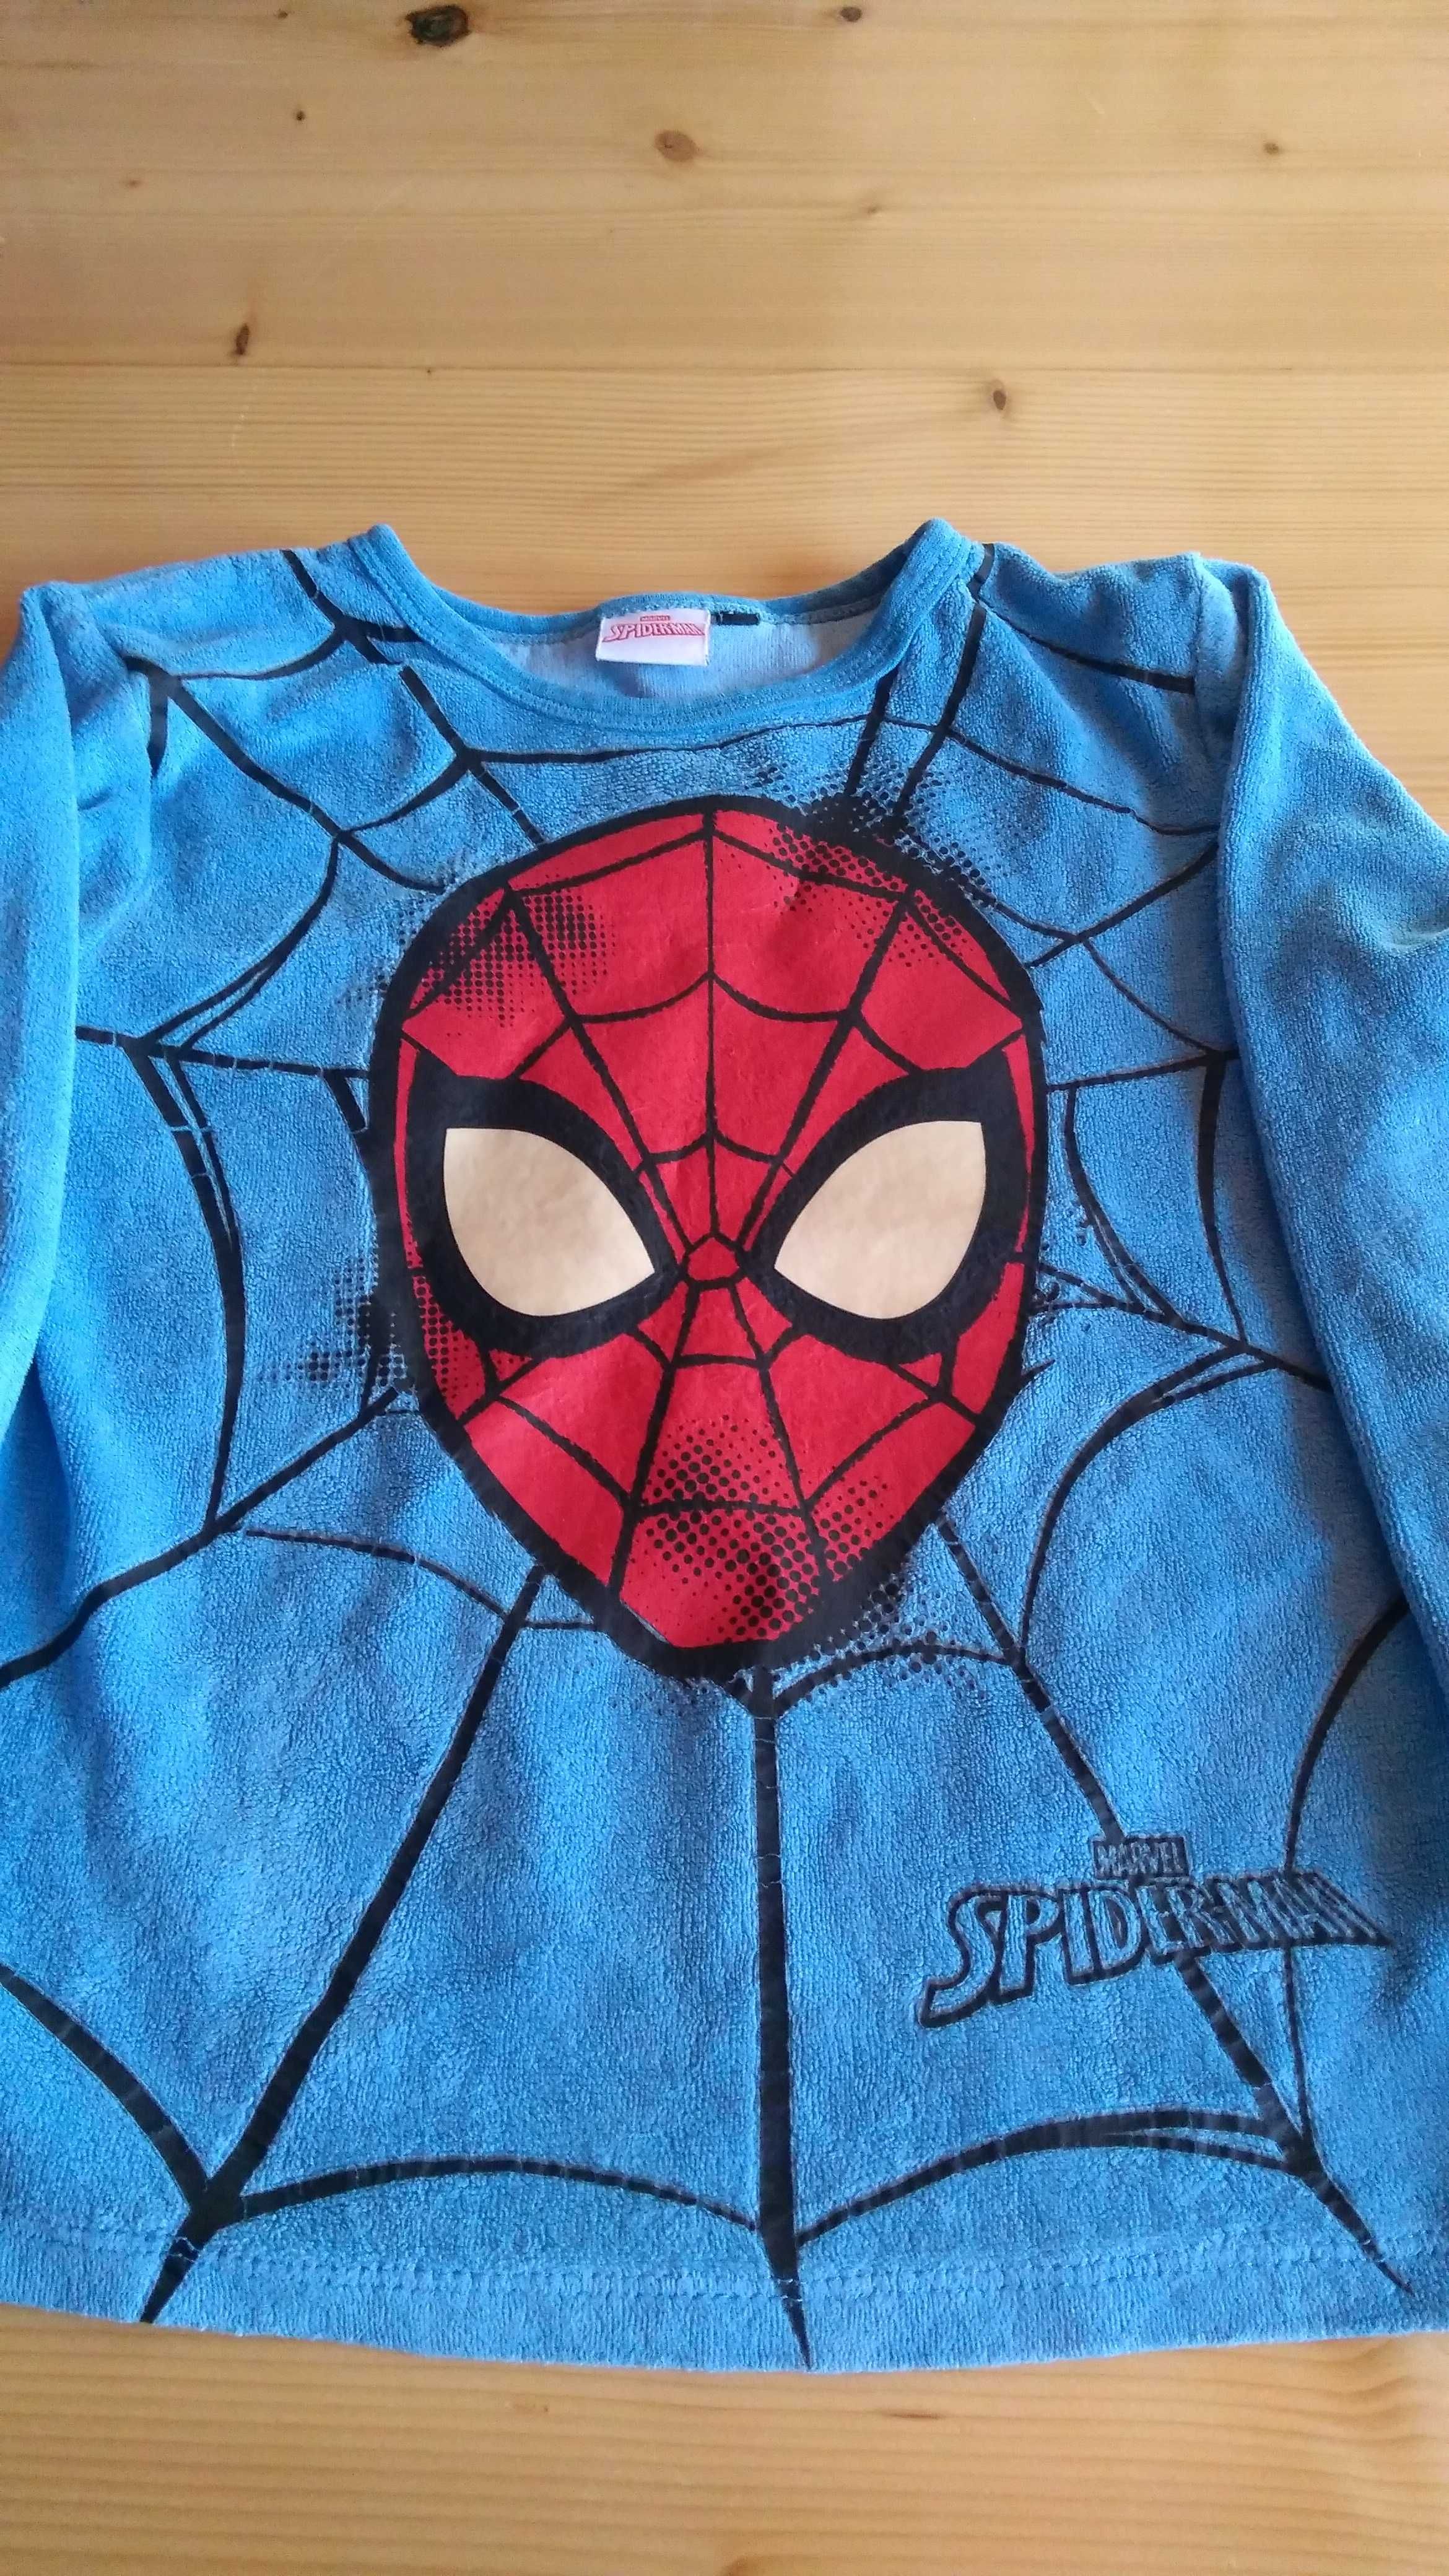 Bluza Spiderman z fosforyzującymi oczami dla 3-4 latka